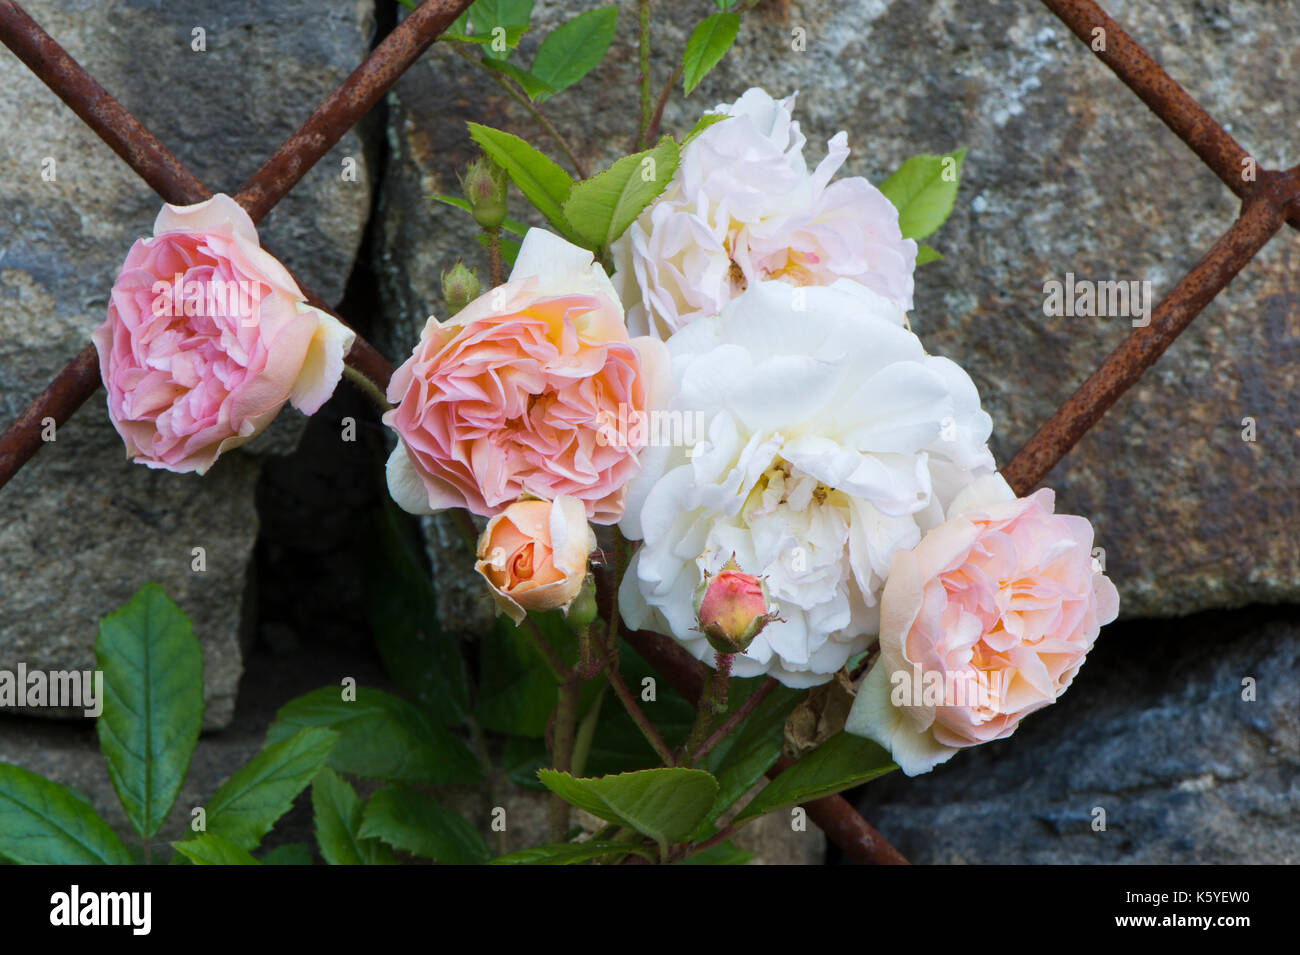 Belle, privé, traditionnelle, country garden, West Yorkshire, Angleterre, Royaume-Uni - l'été des plantes à fleurs (roses rose pâle) en gros plan sur treillage métallique. Banque D'Images